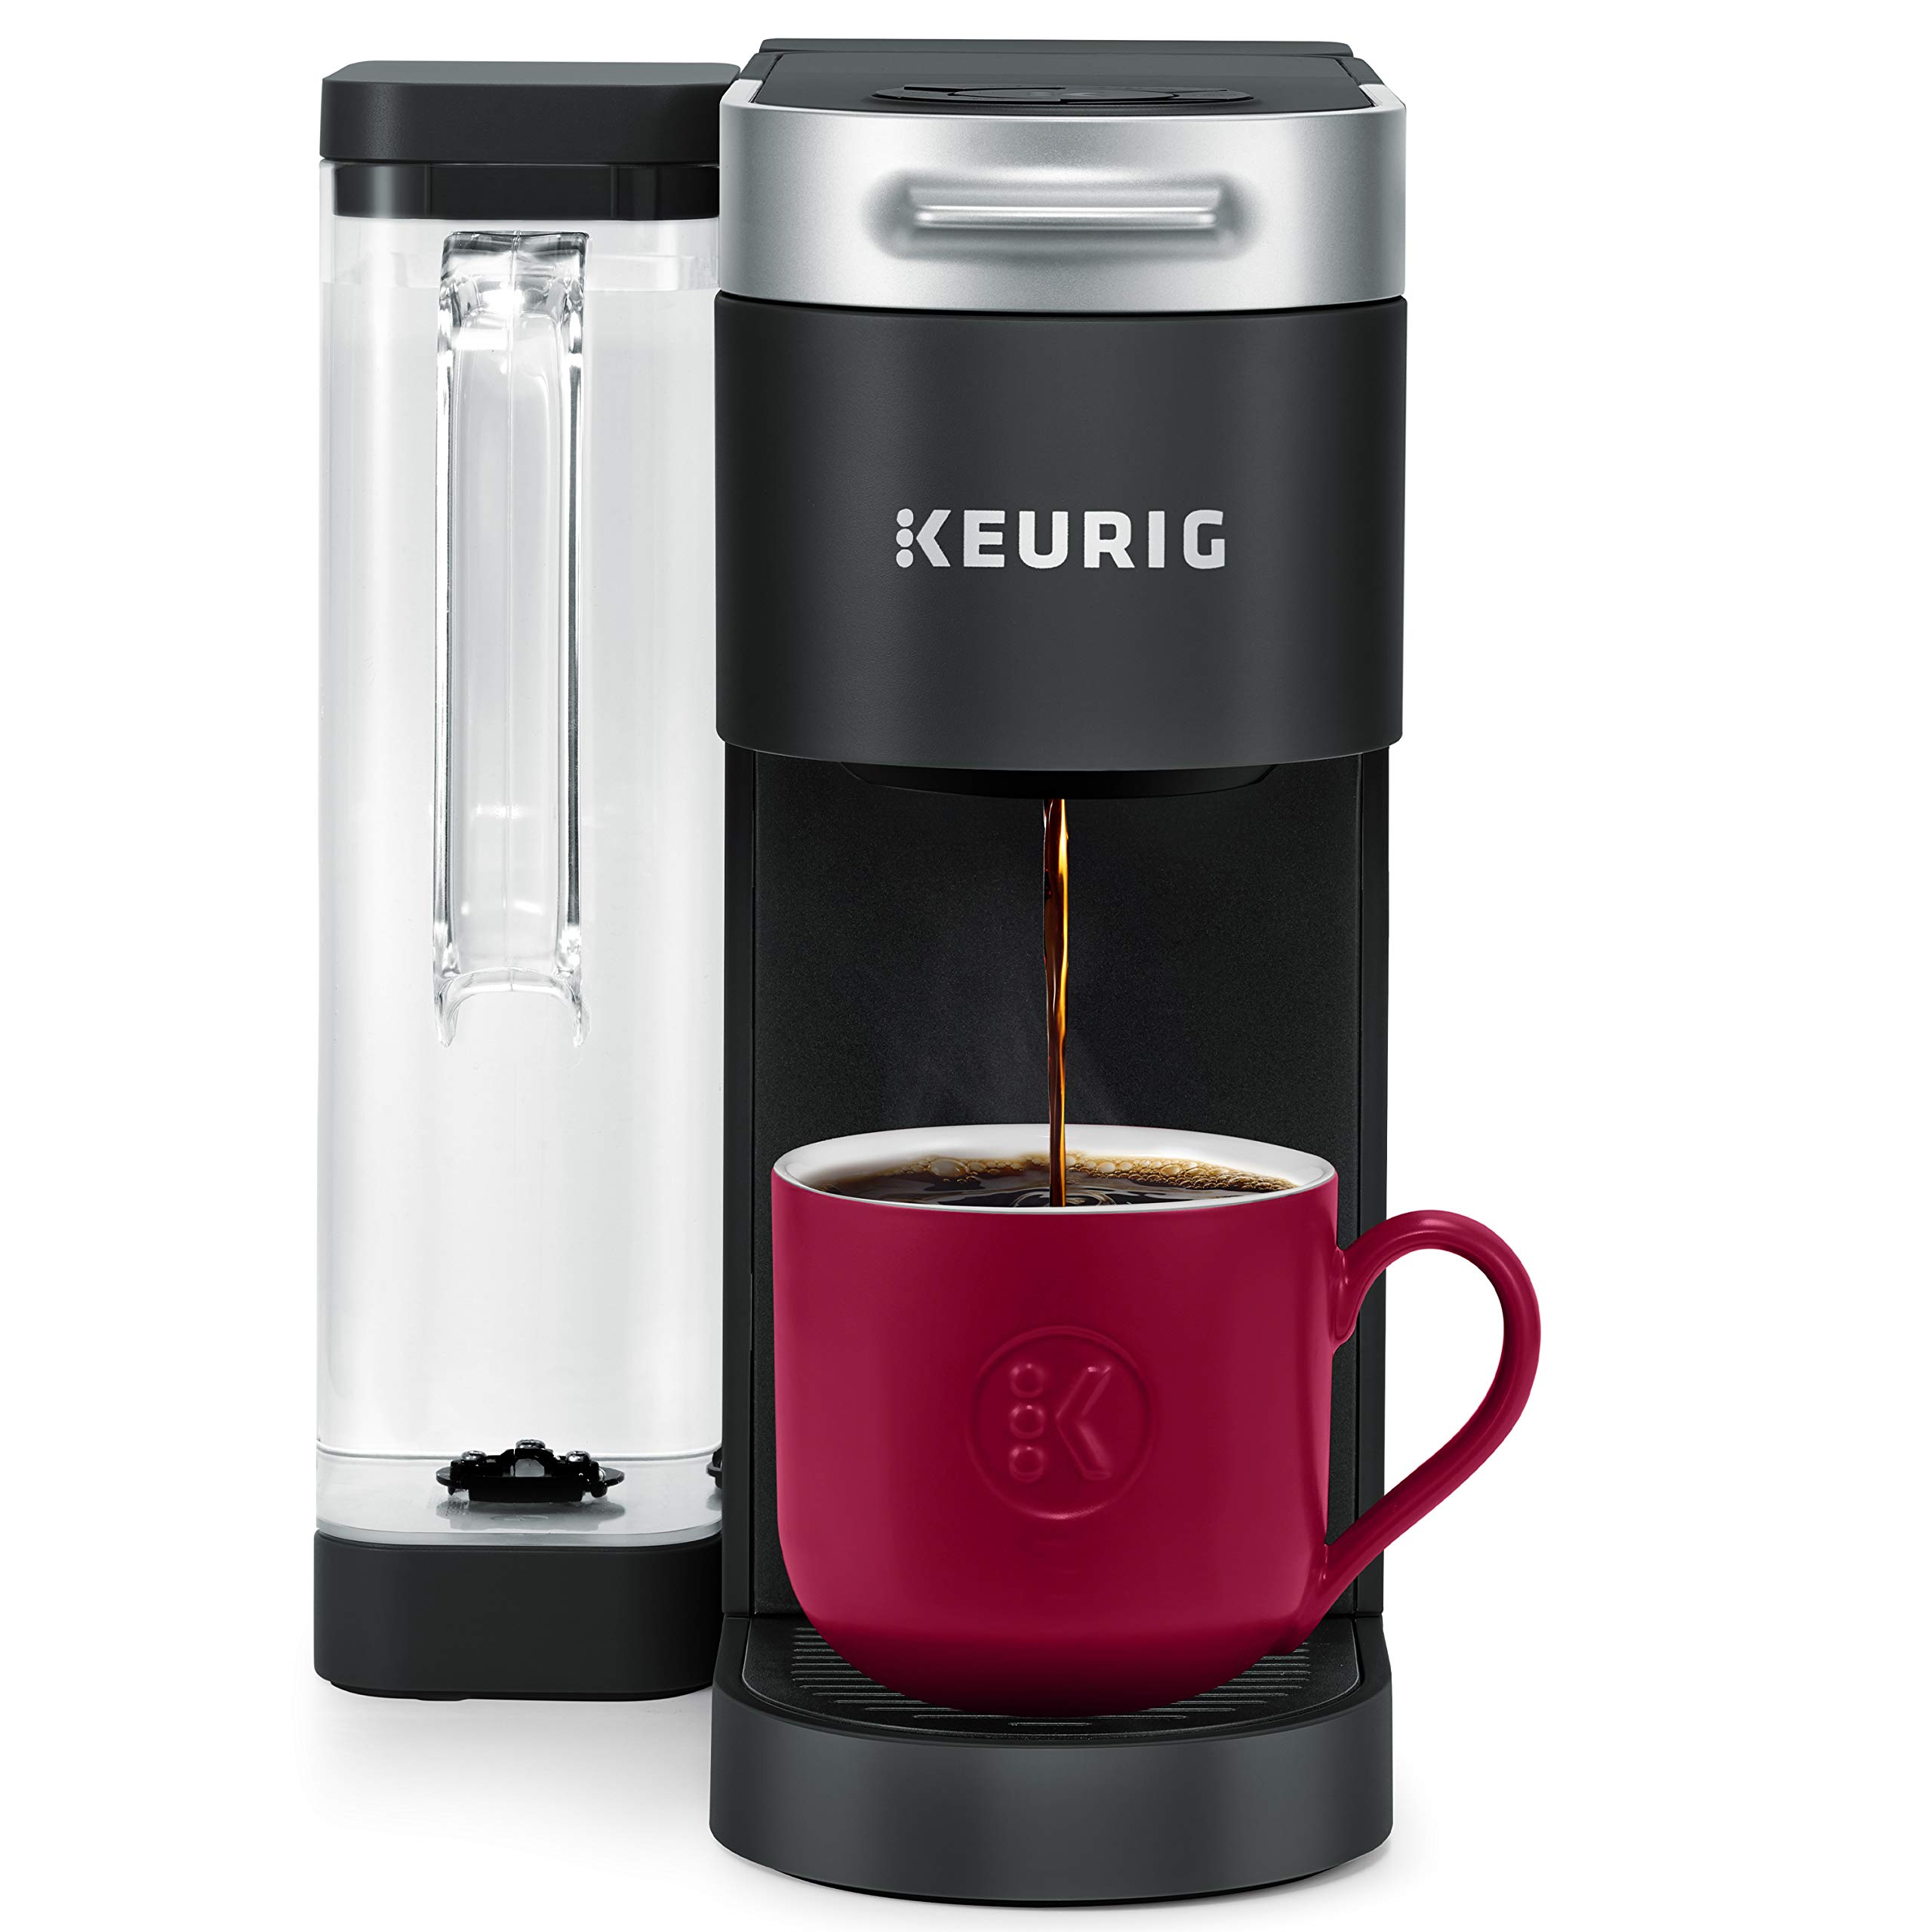 Keurig K-Supreme シングルサーブ K-カップ ポッドコーヒーメーカー、マルチストリームテクノロジー、ブラック